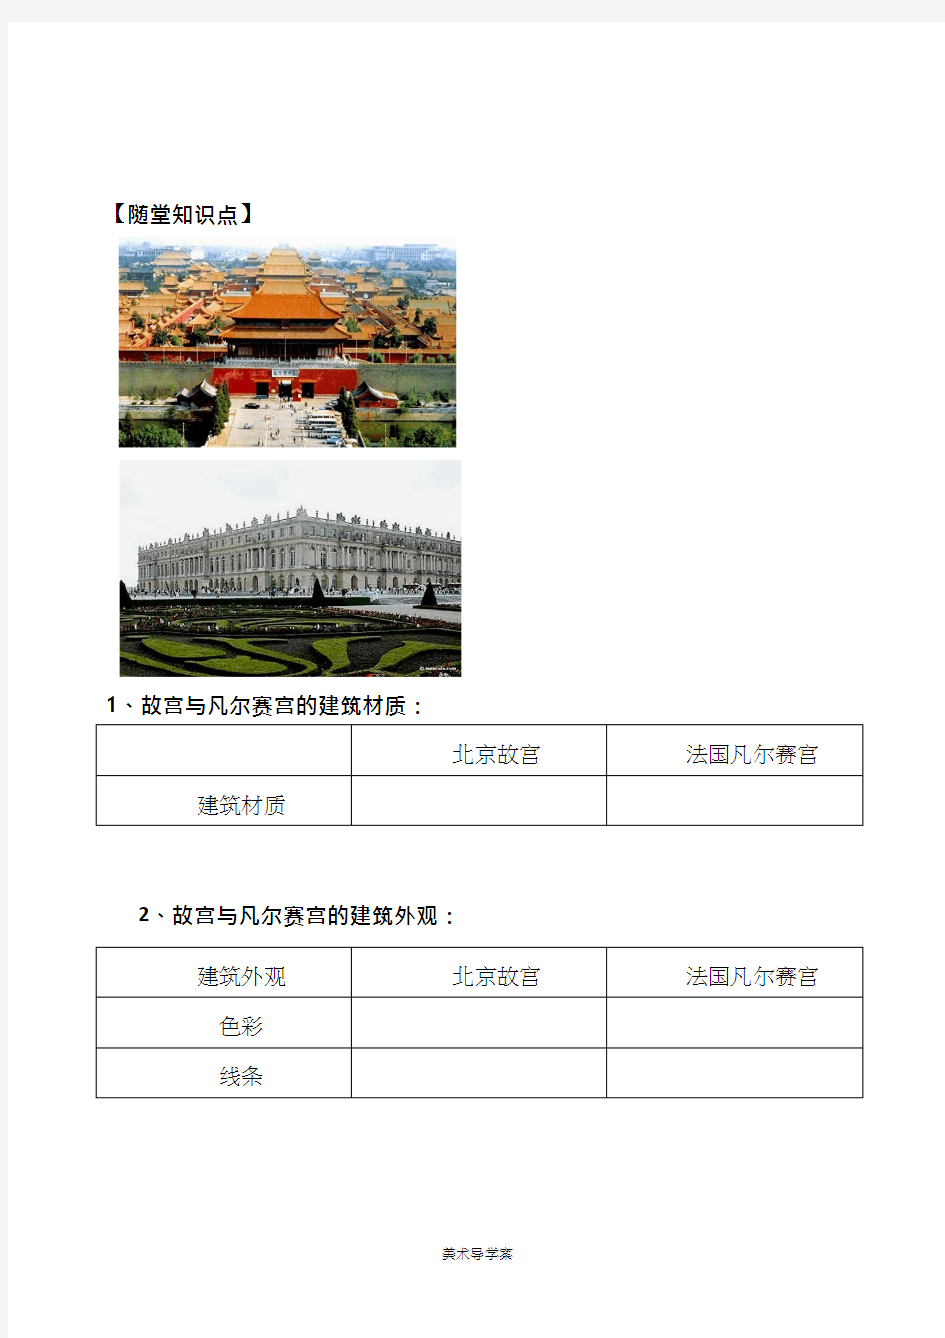 美术《北京故宫与巴黎凡尔赛宫》教案、教学设计